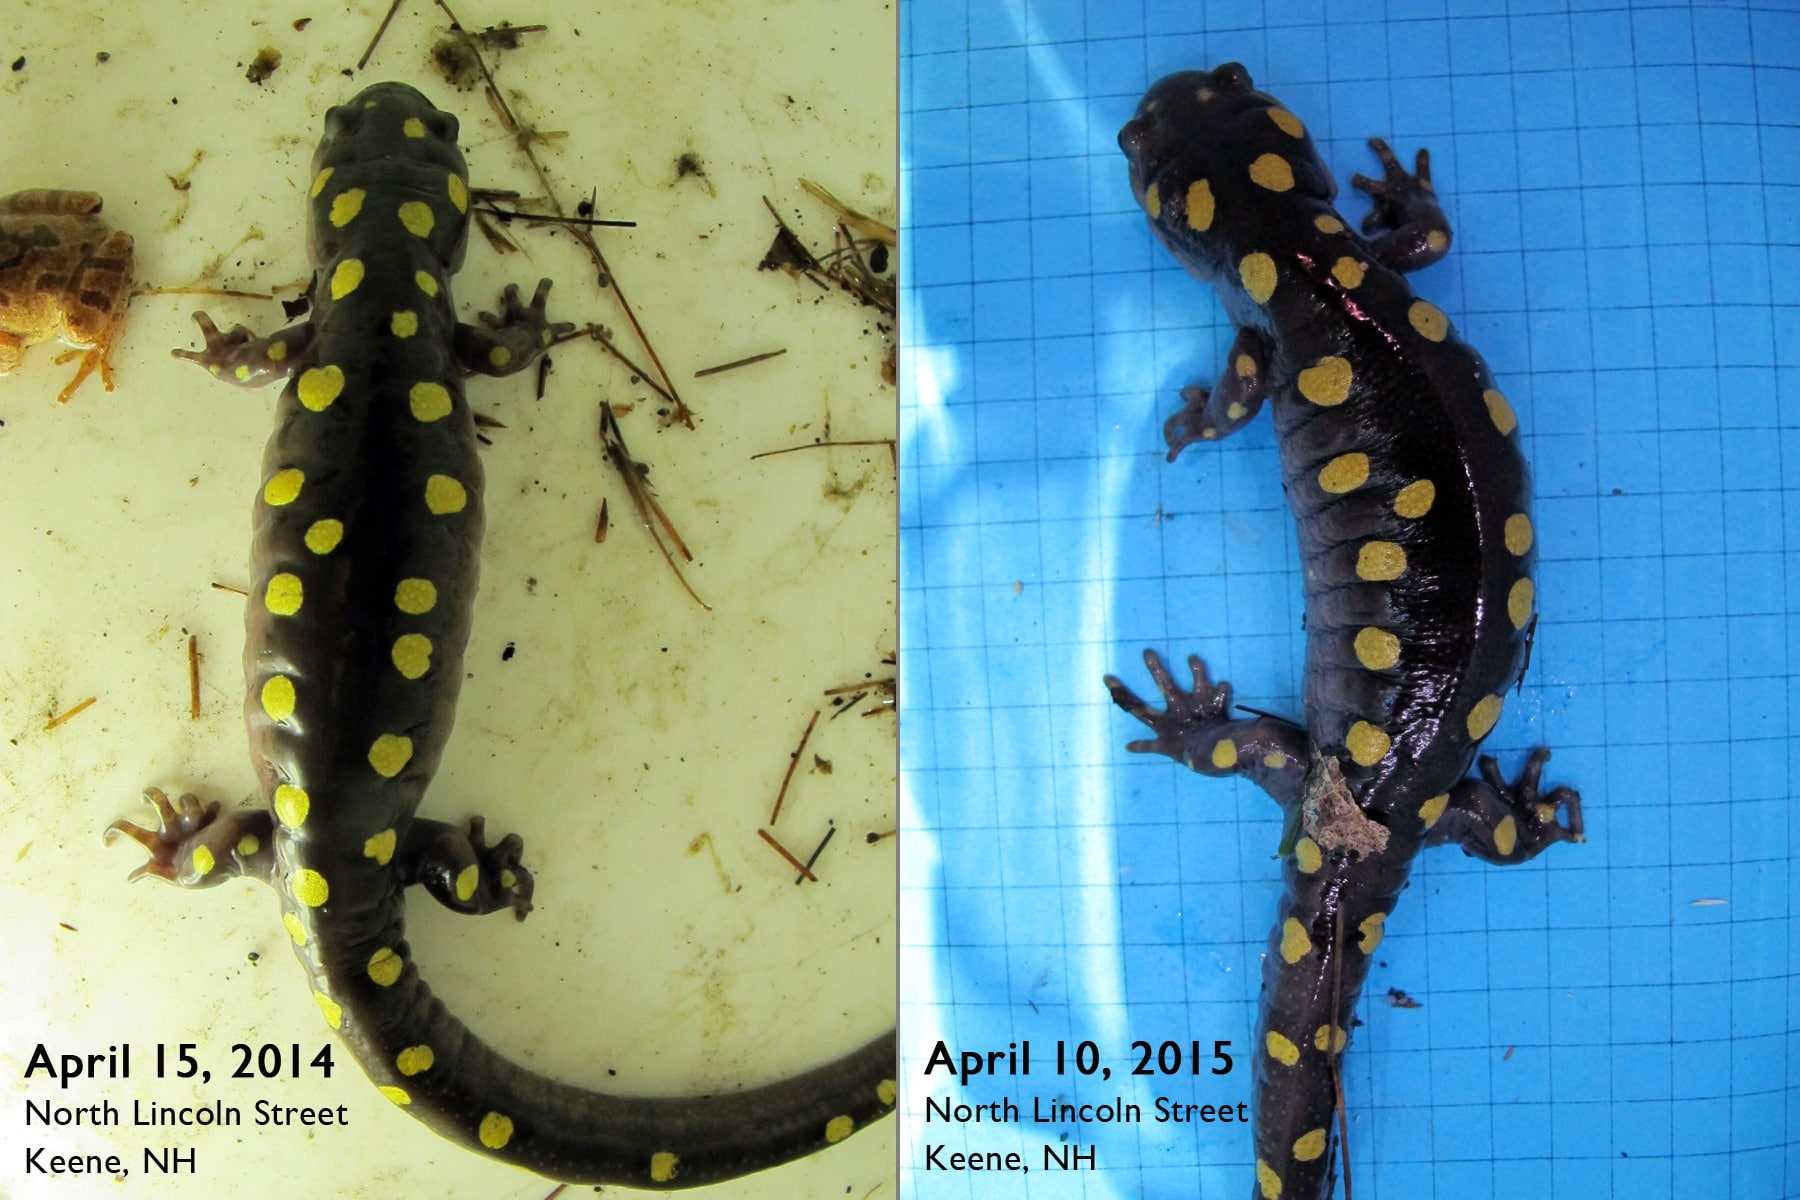 Two photos of the same salamander, taken a year apart.